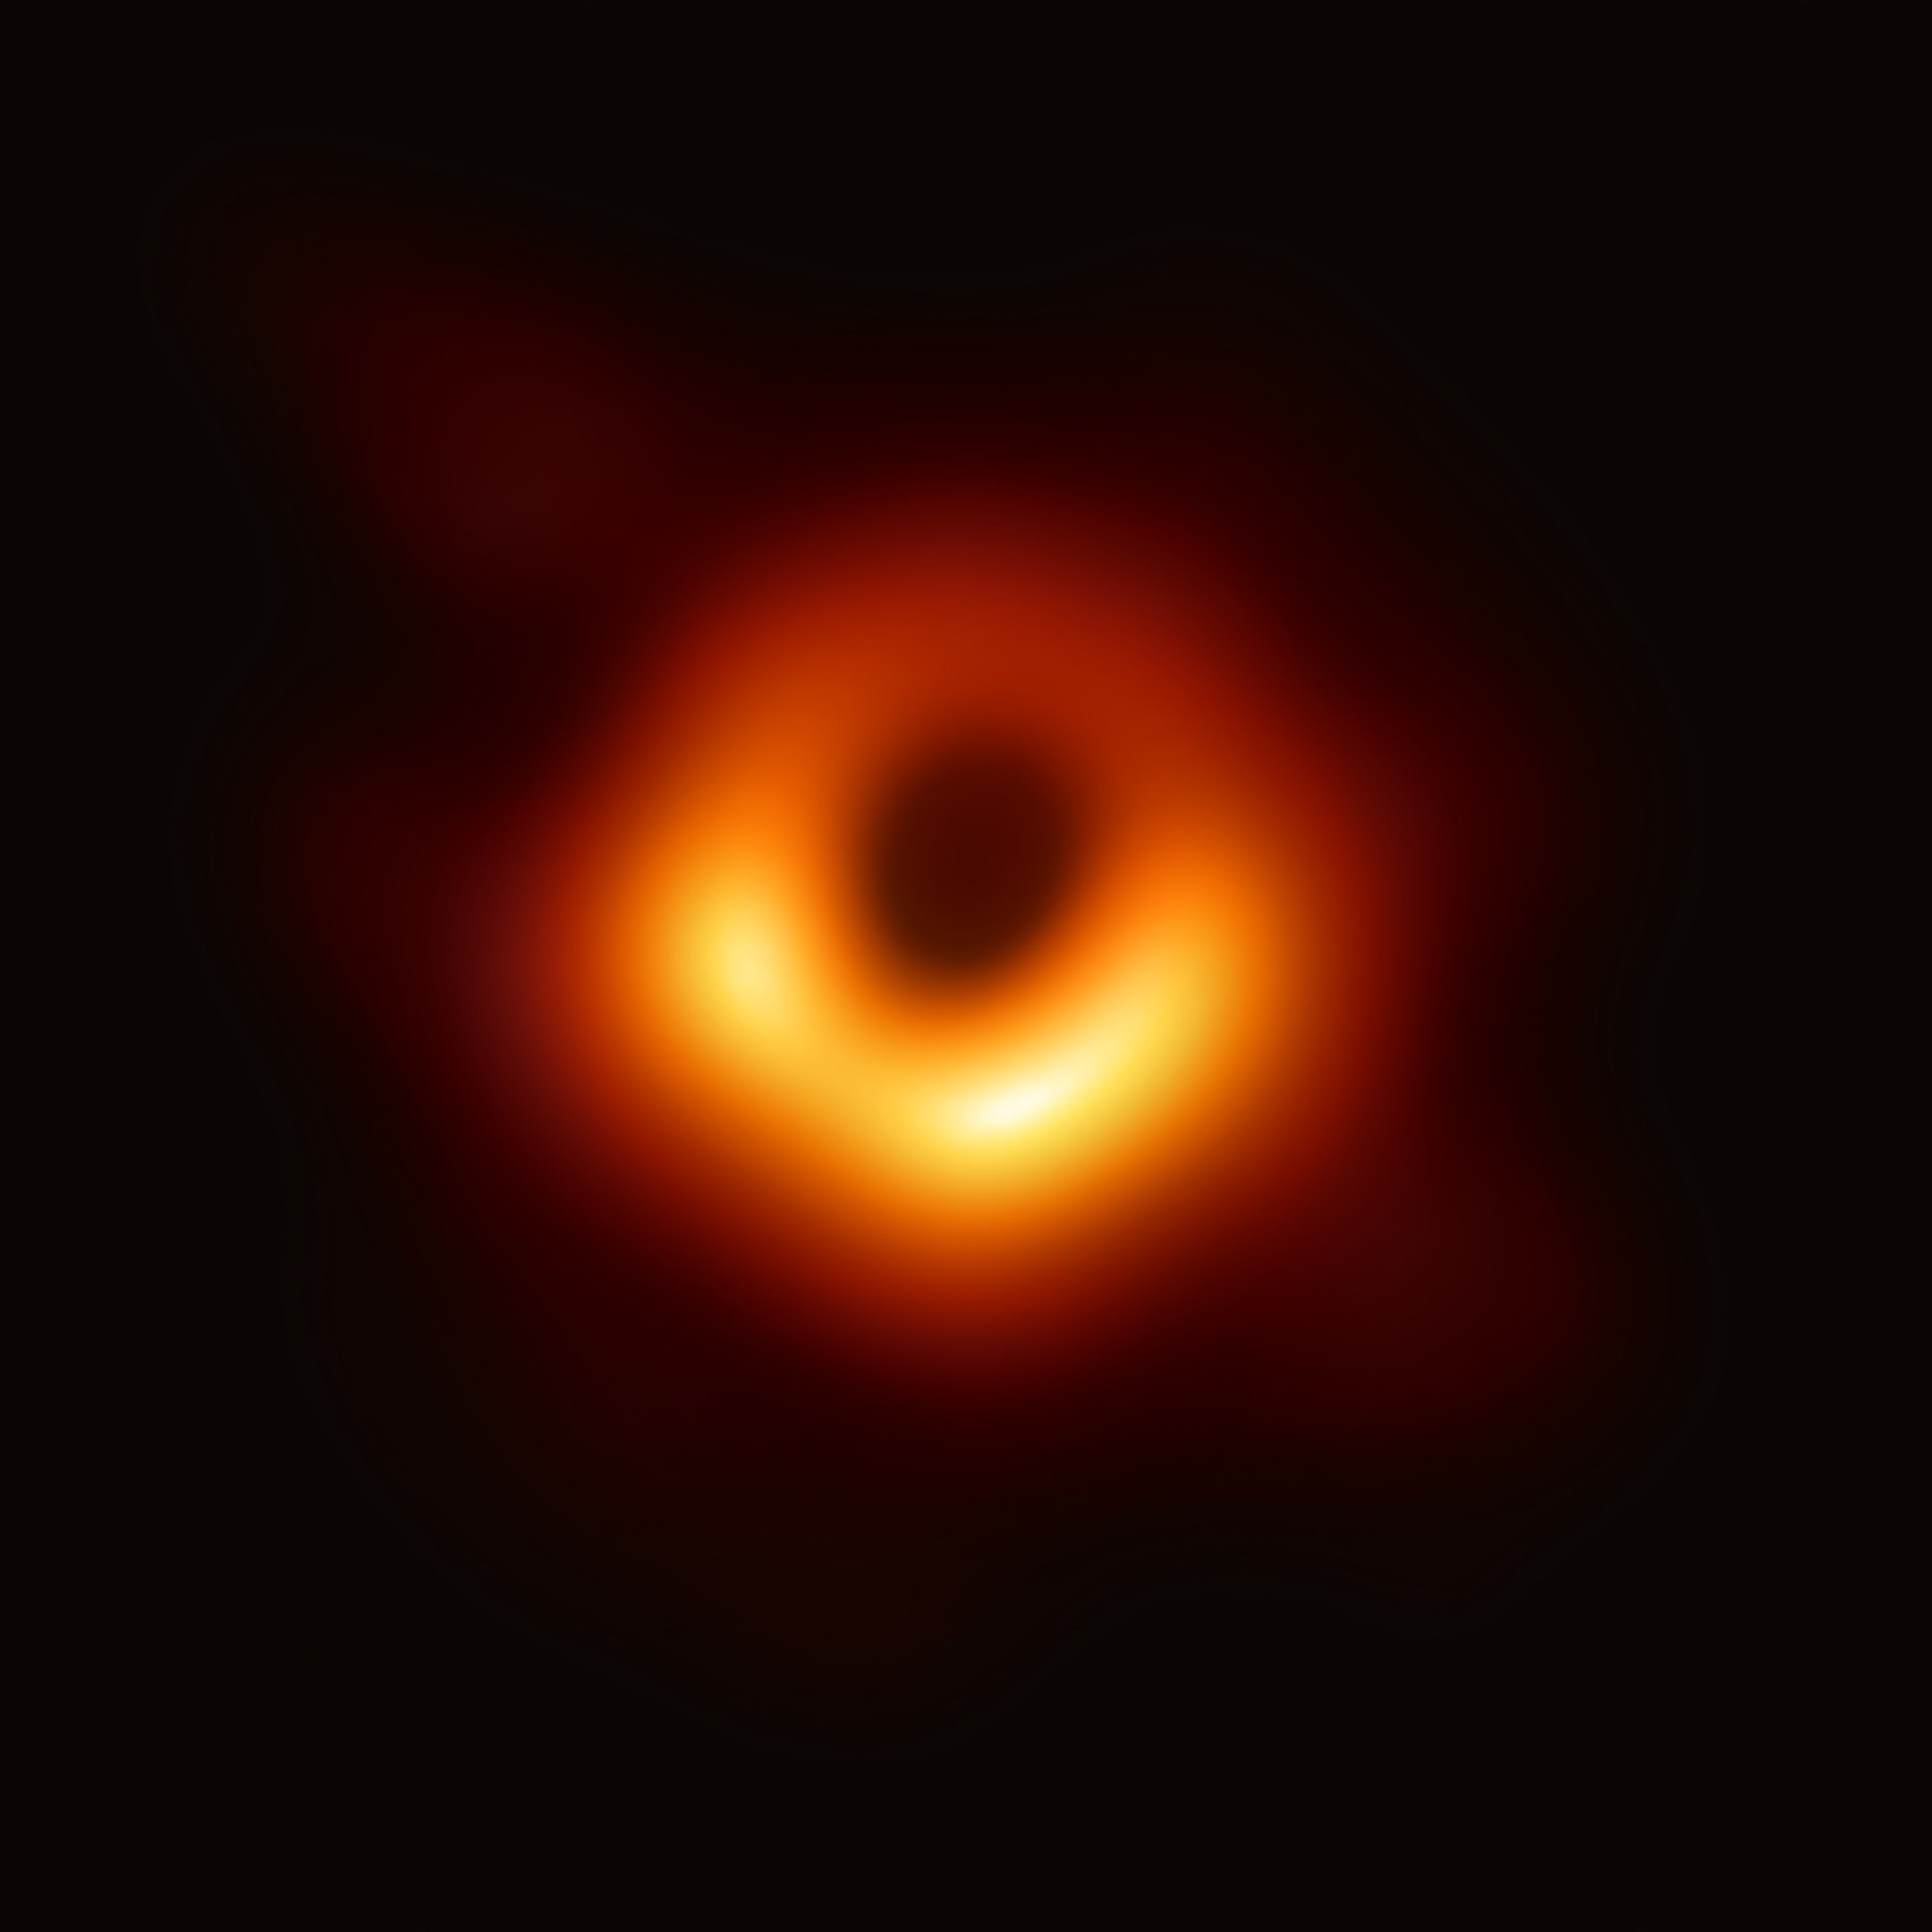 Primera imagen real de la historia de un agujero negro supermasivo ubicado en el centro de la galaxia M87 presentado el 10 de abril de 2019 por el consorcio internacional Telescopio del Horizonte de Sucesos. EHT.